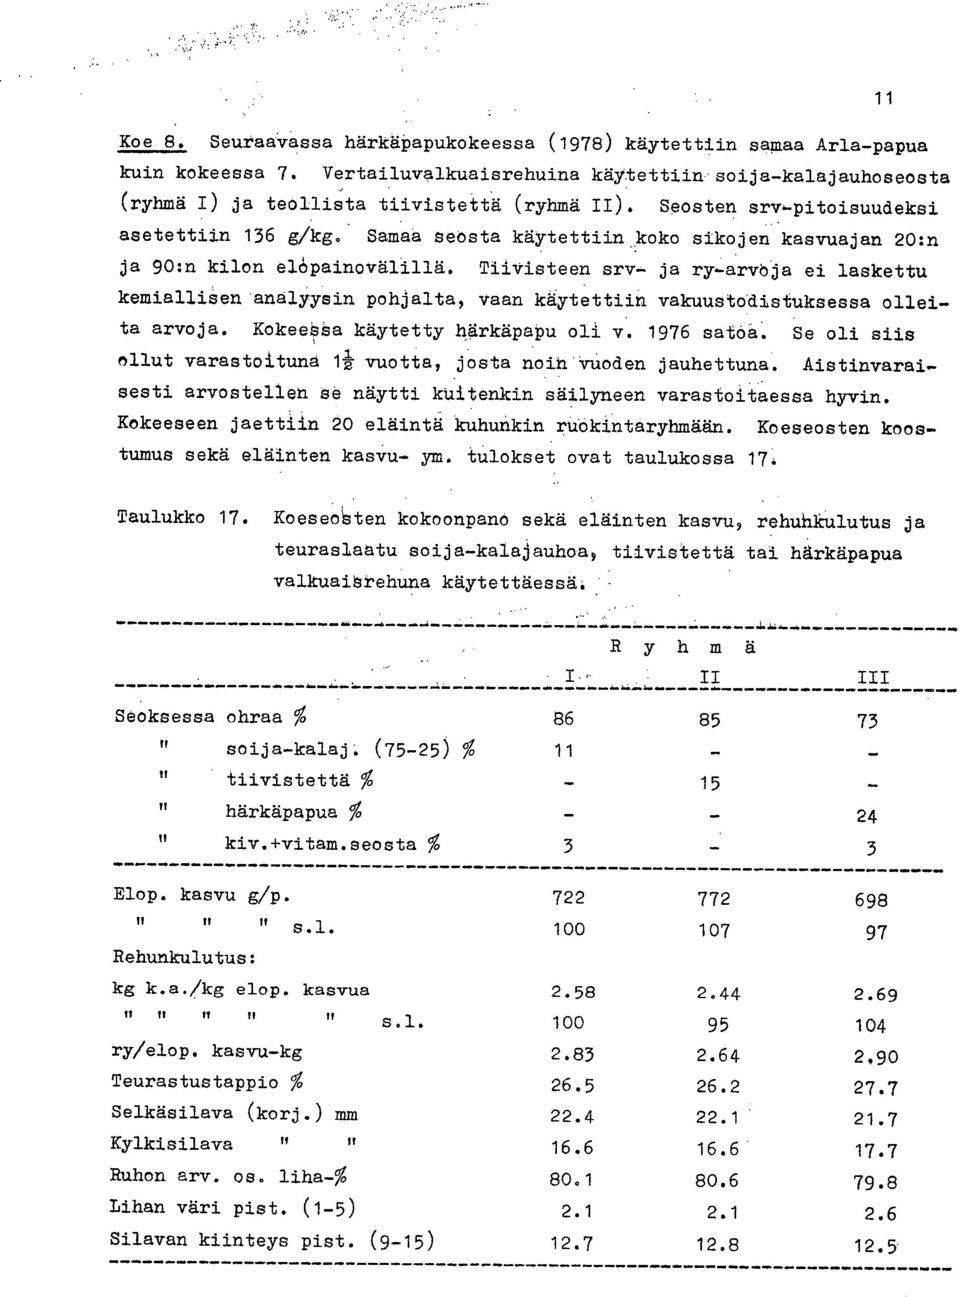 ja ry-arvöja ei laskettu kemiallisen'analyysin pohjalta, vaan käytettiin vakuustodistuksessa olleita arvoja. Kokeeååa käytetty härkäpapu oli v. 1976 satoa.